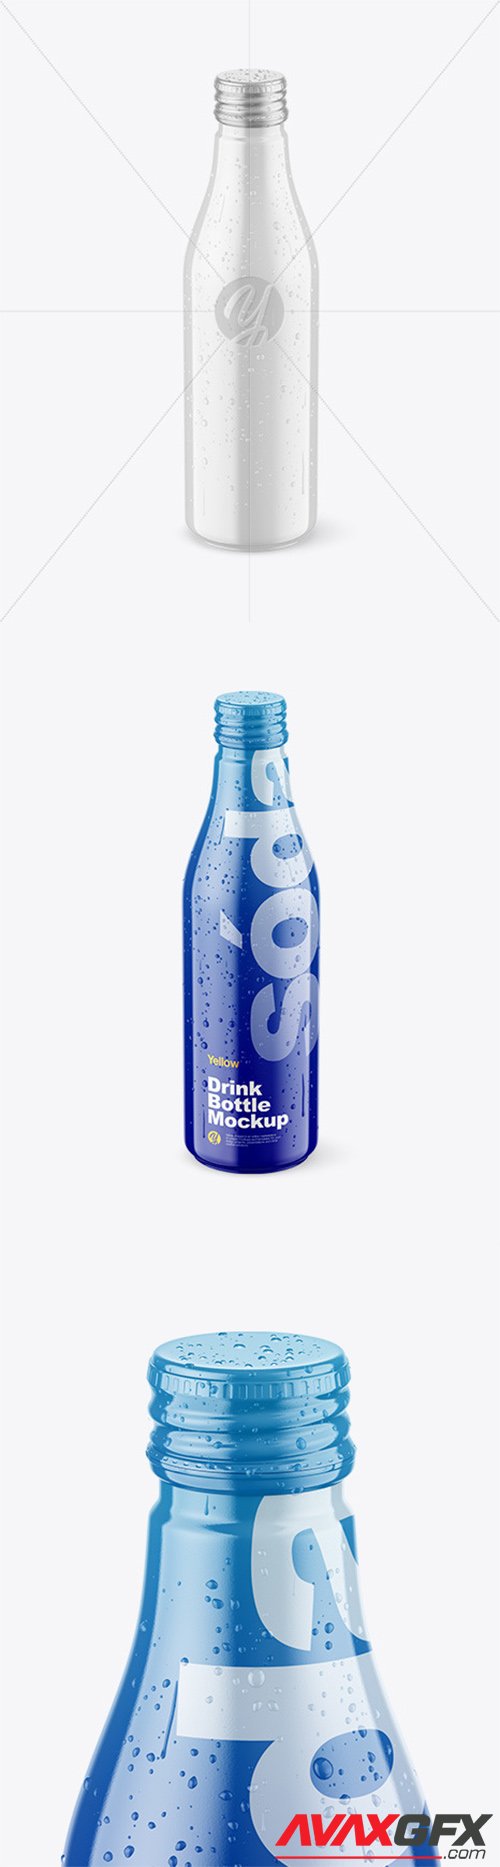 Glossy Drink Bottle w/ Drops Mockup 78312